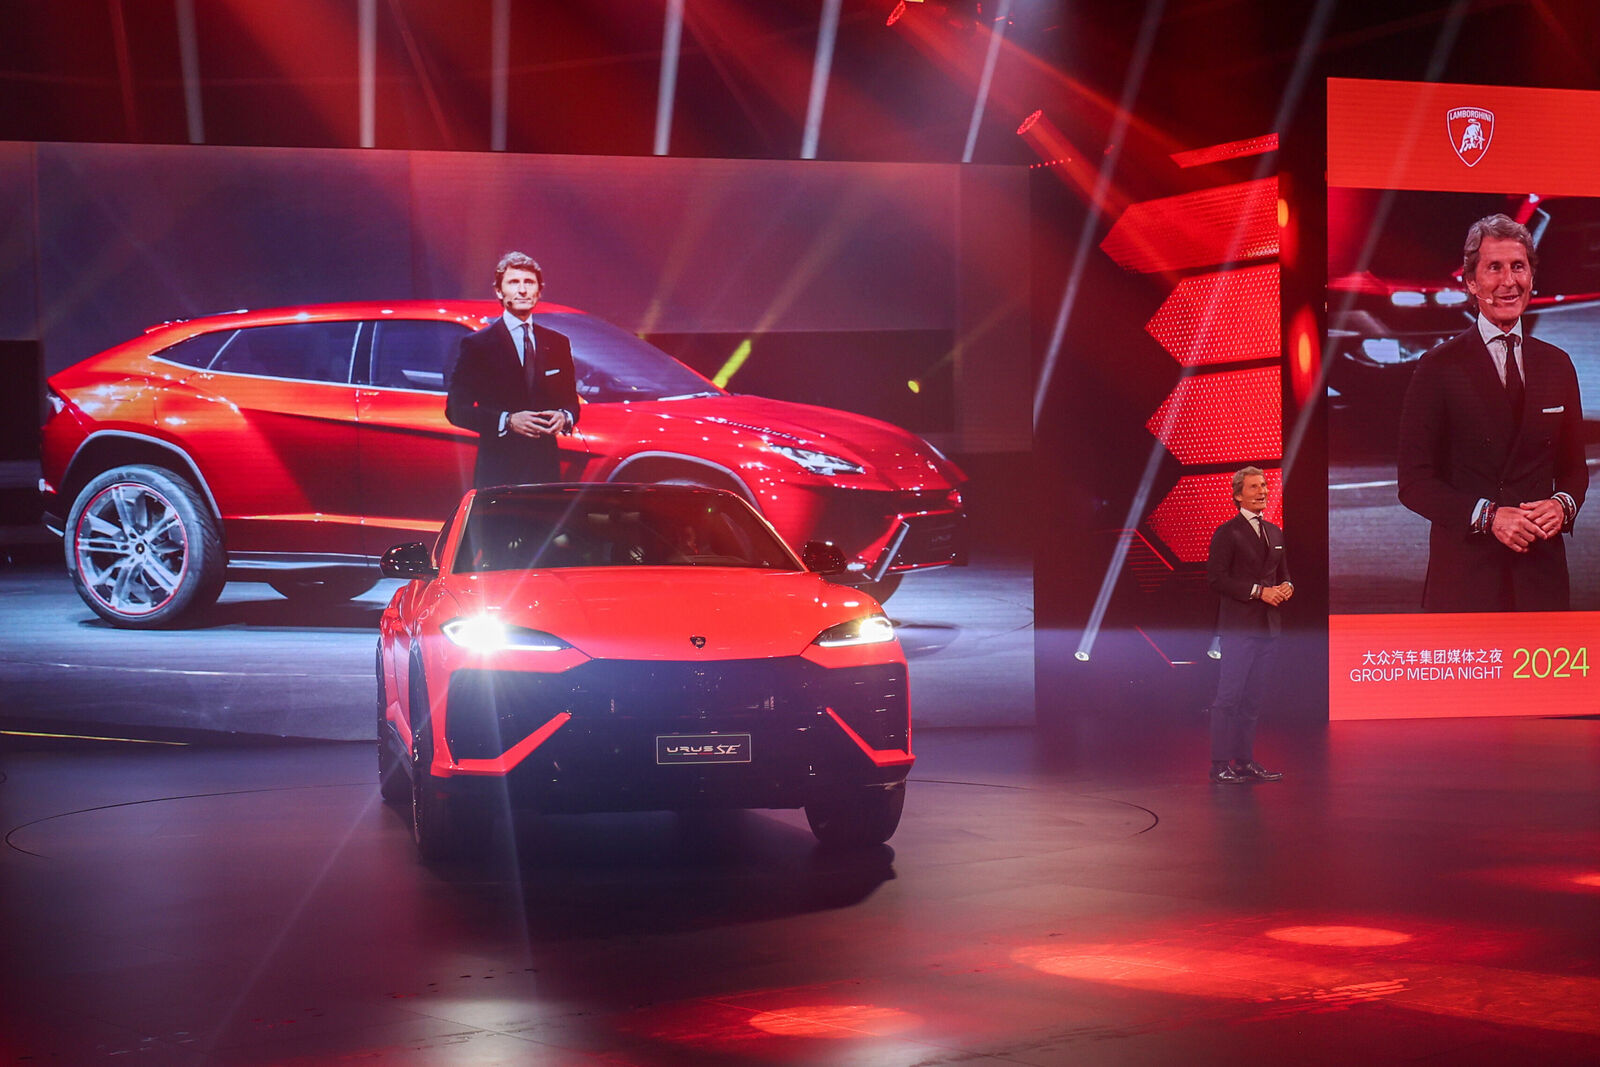 Ein leuchtend orangefarbener Lamborghini Urus S wird in einem Präsentationsraum unter lebendiger roter Beleuchtung vorgestellt.